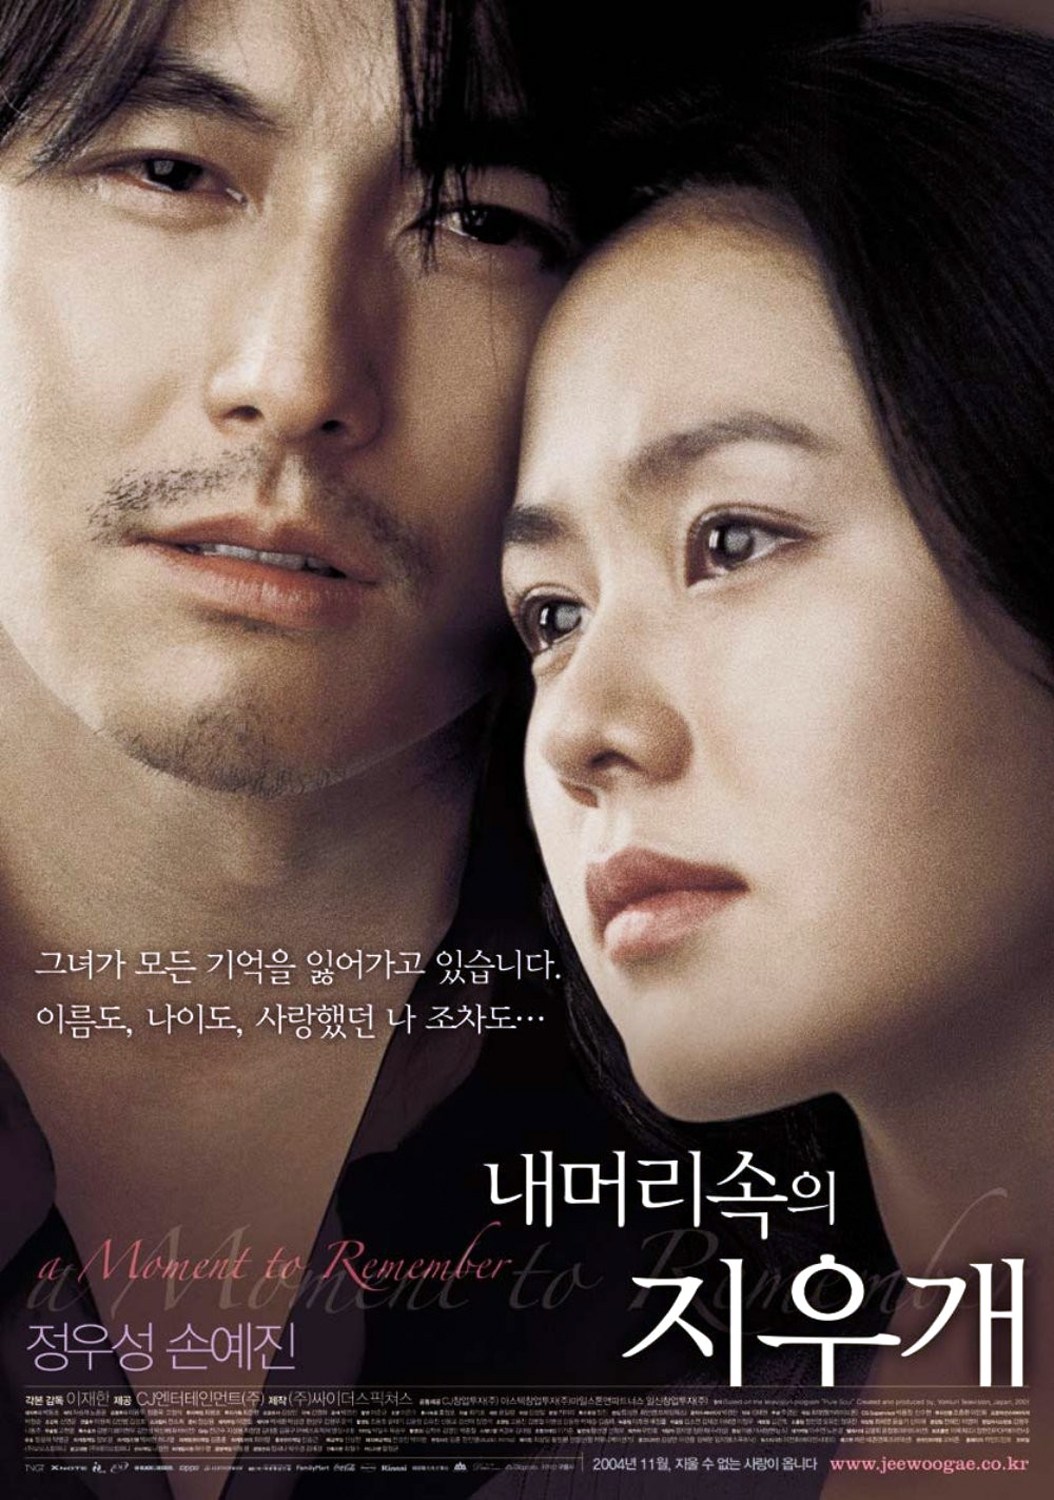 in love movie Korean